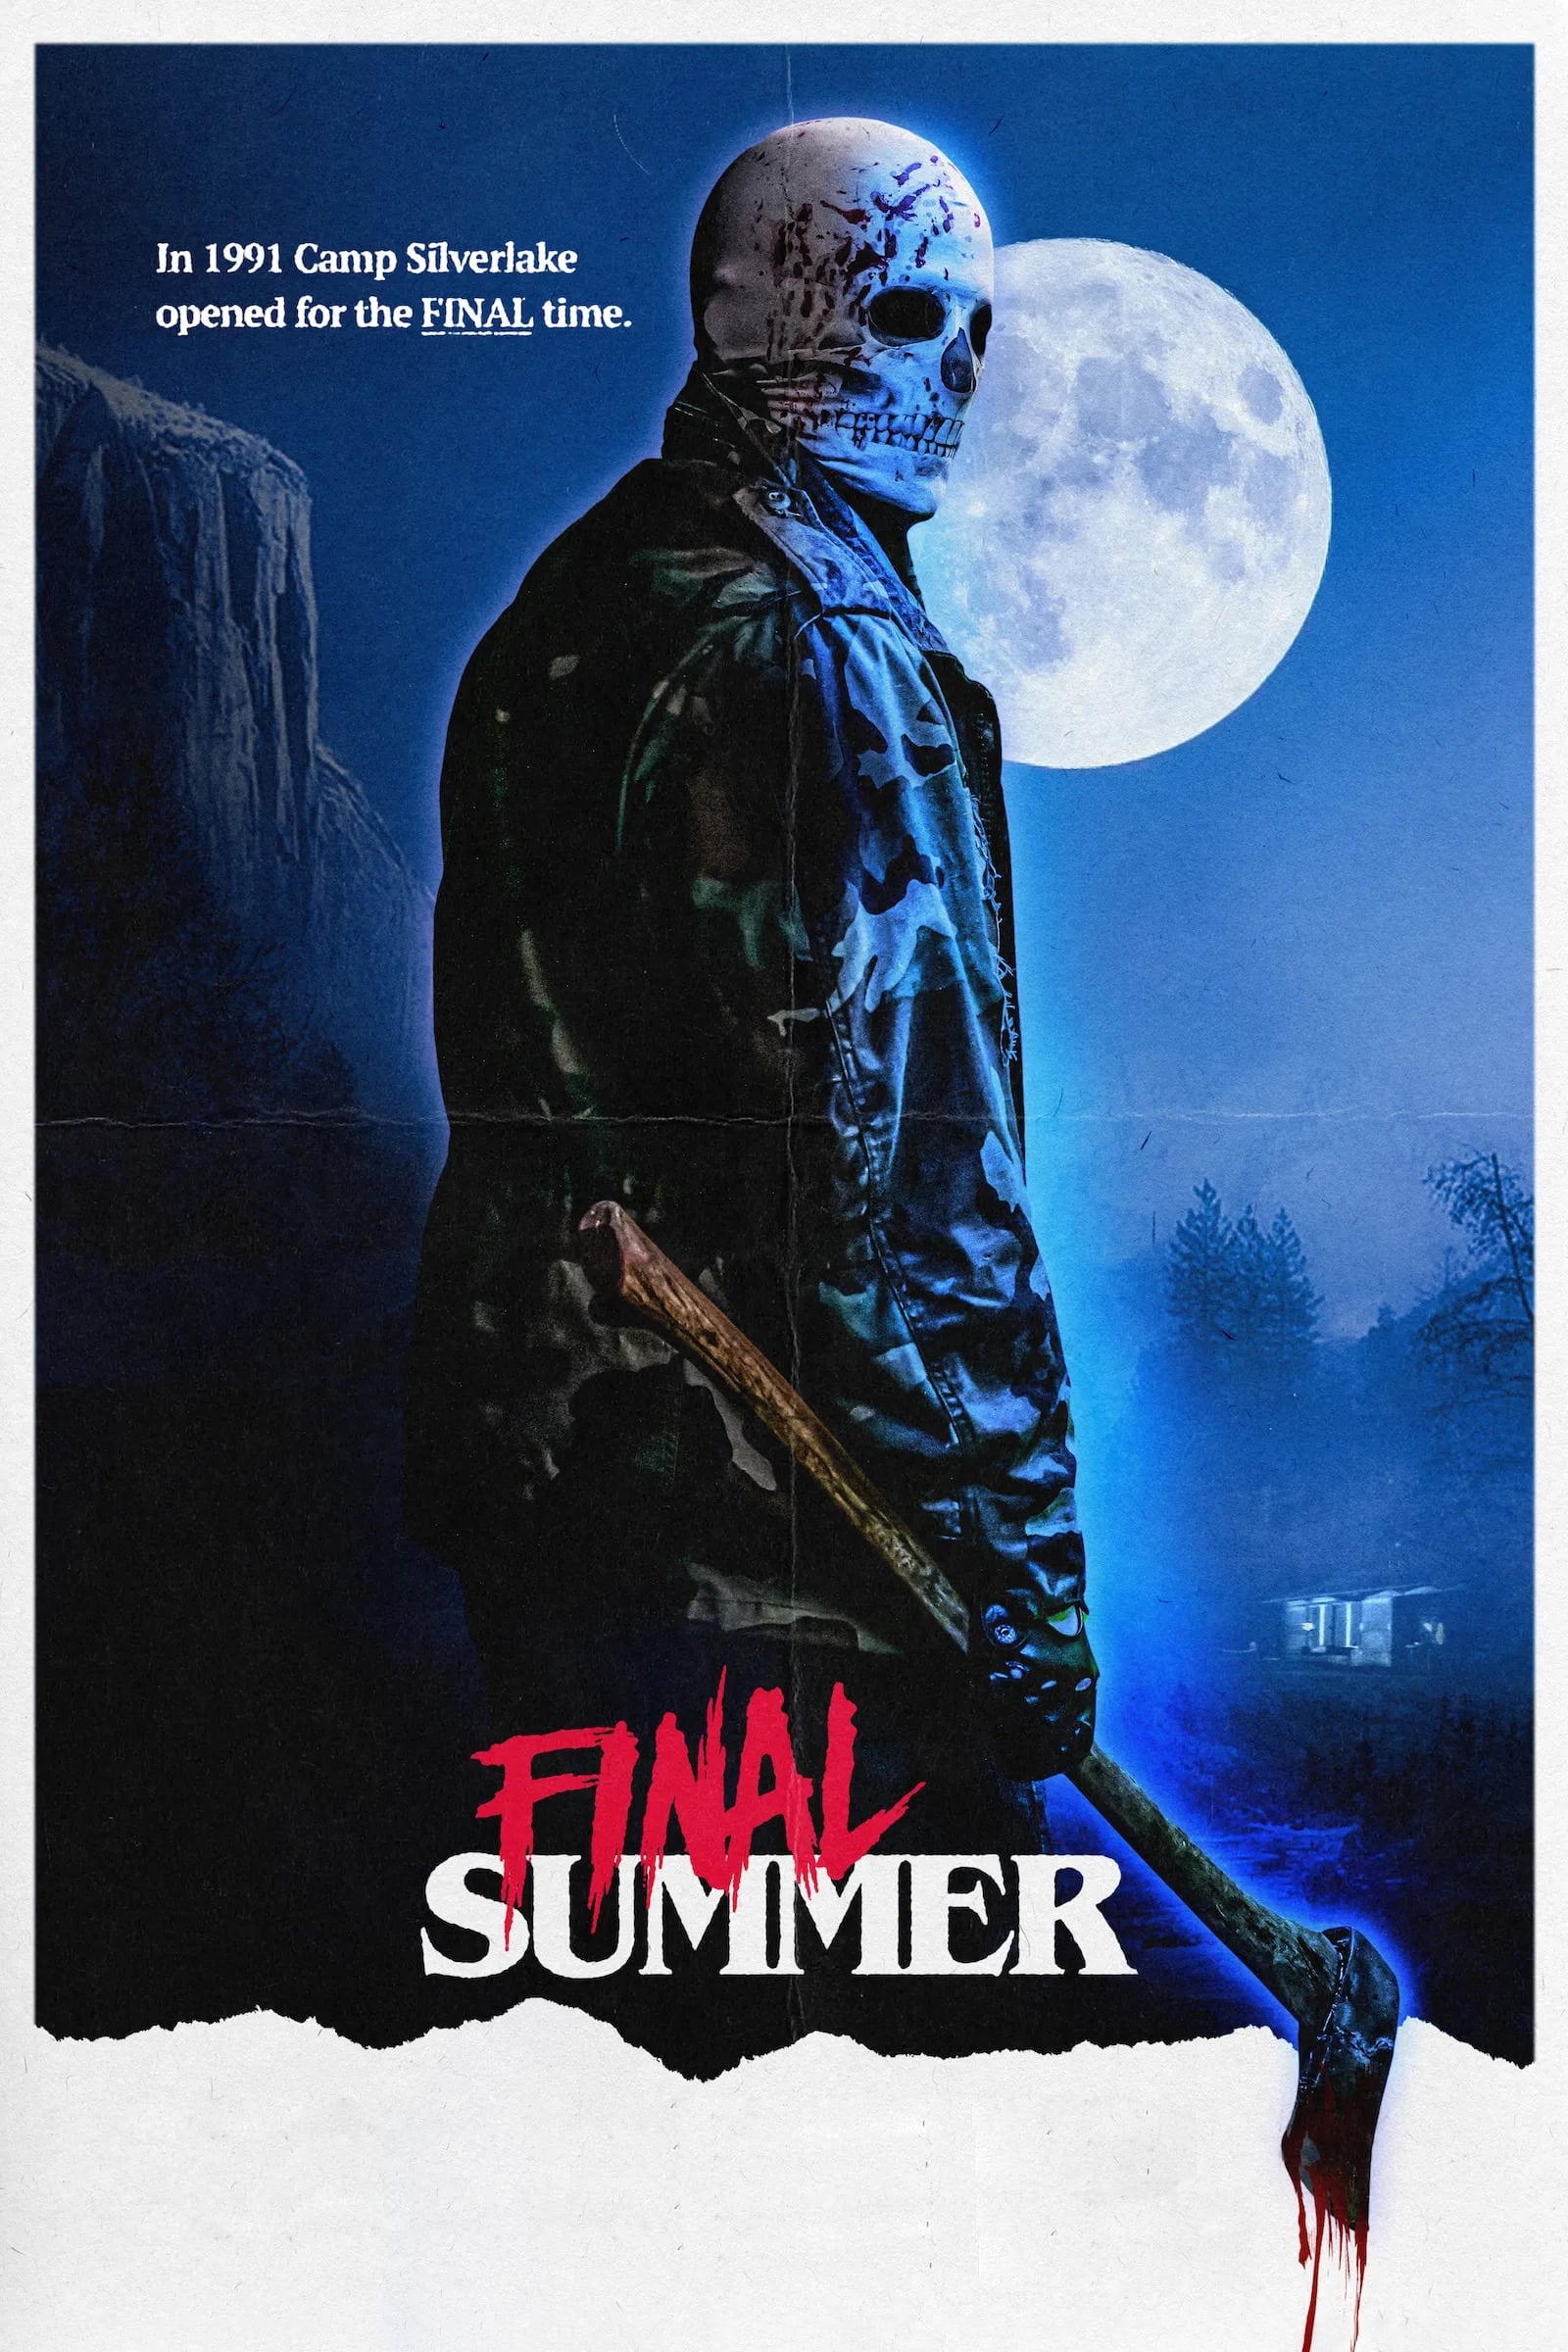 Final Summer poster